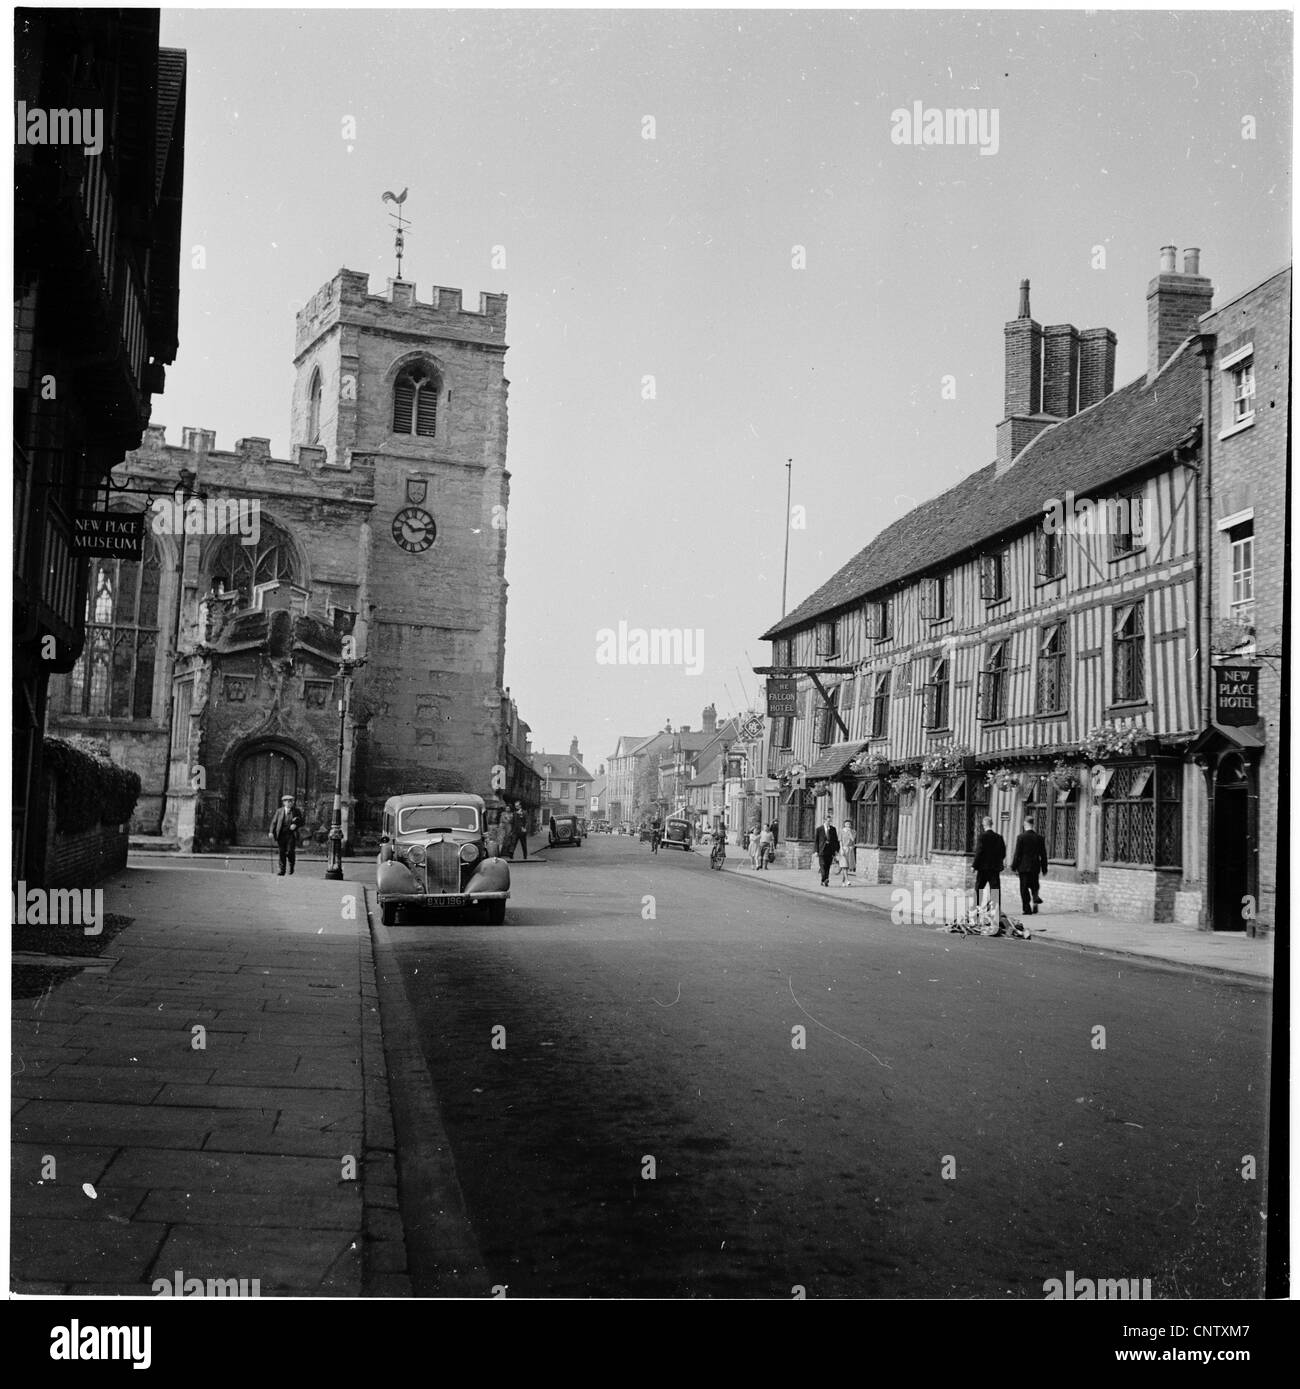 Historische Aufnahme aus den 1950er Jahren von der Stadt von Stratford-upon-Avon, dem Geburtsort des englischen Dramatikers William Shakespeare. Stockfoto